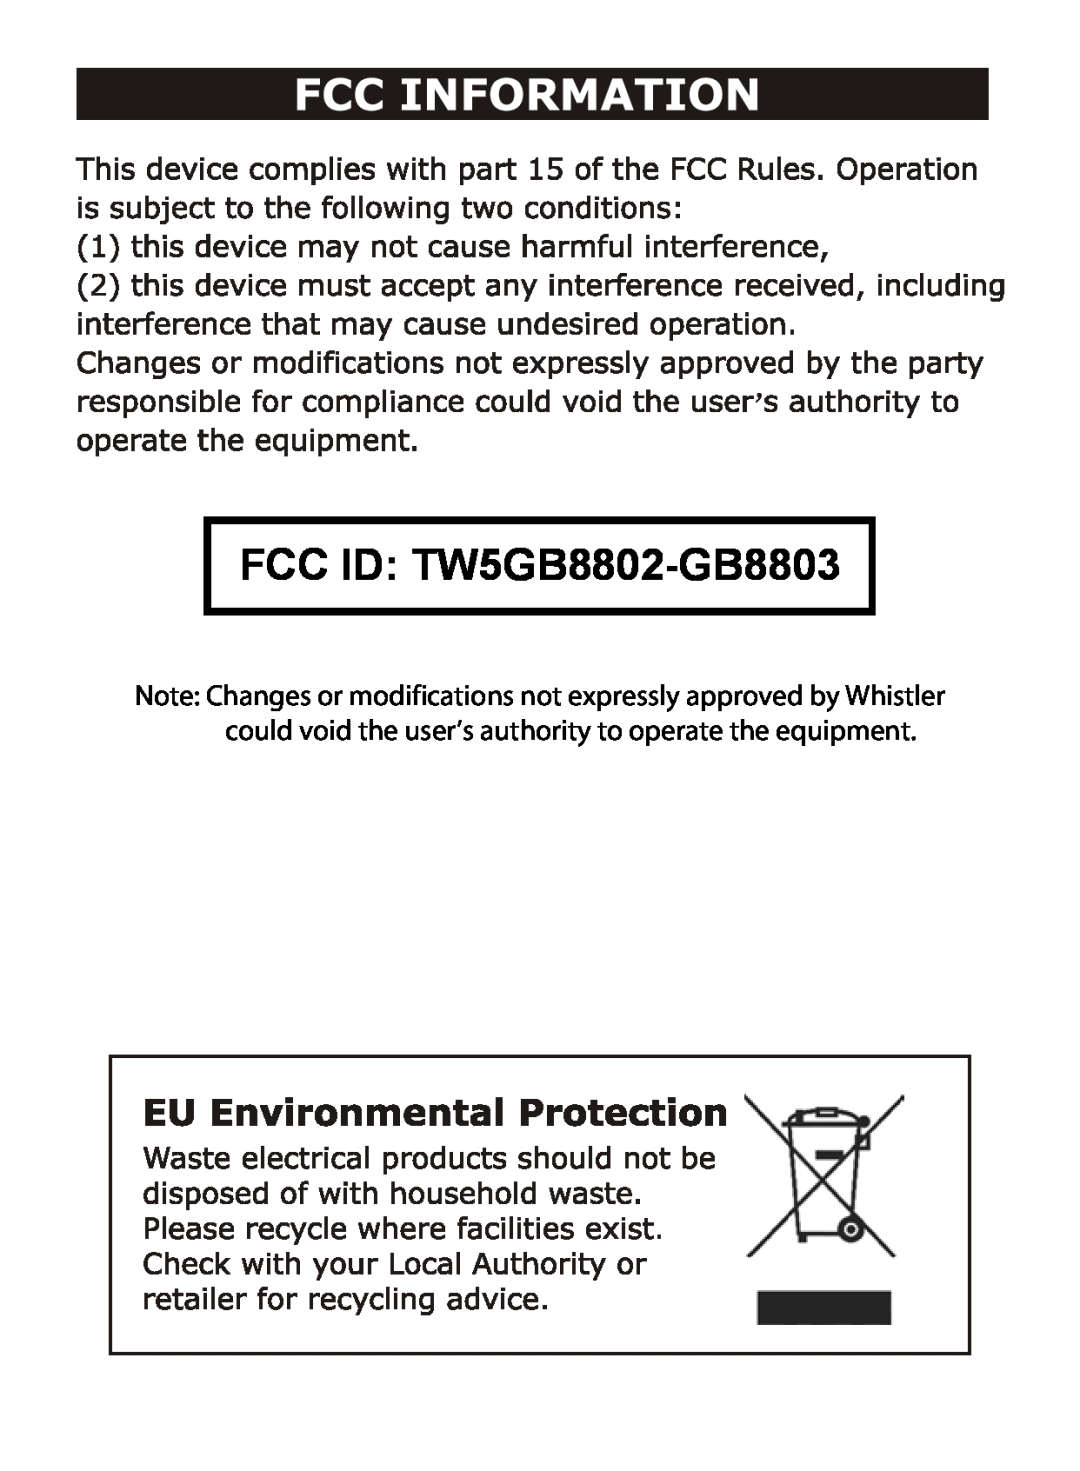 Whistler WIC-2409C user manual FCC ID TW5GB8802-GB8803 